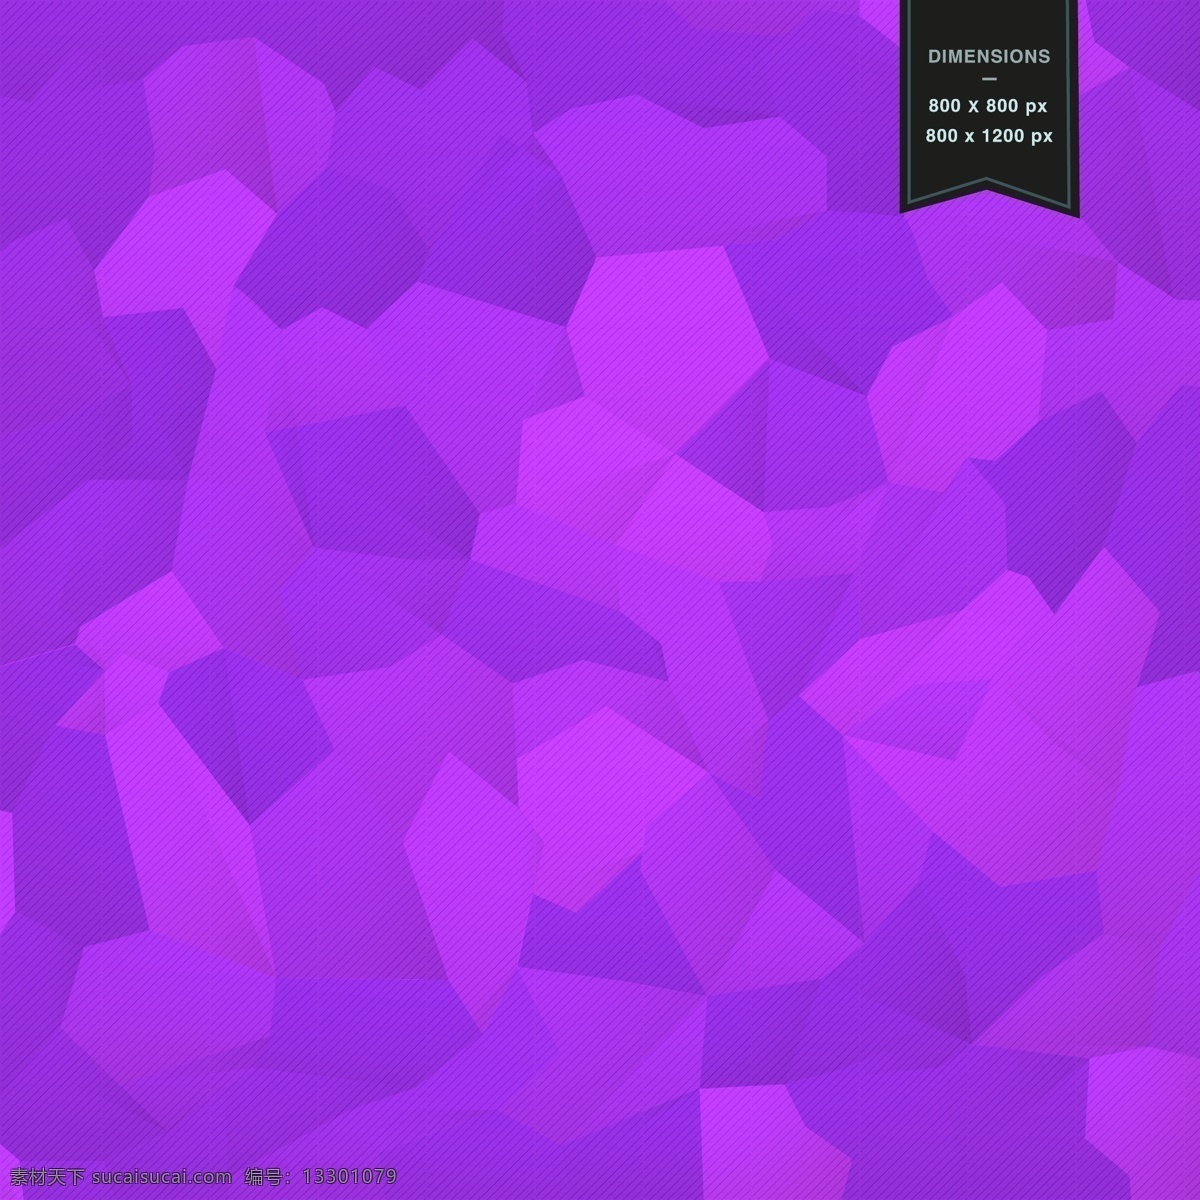 几何 马赛克 背景 抽象 模板 形状 壁纸 布局几何 摘要 最新矢量素材 紫色